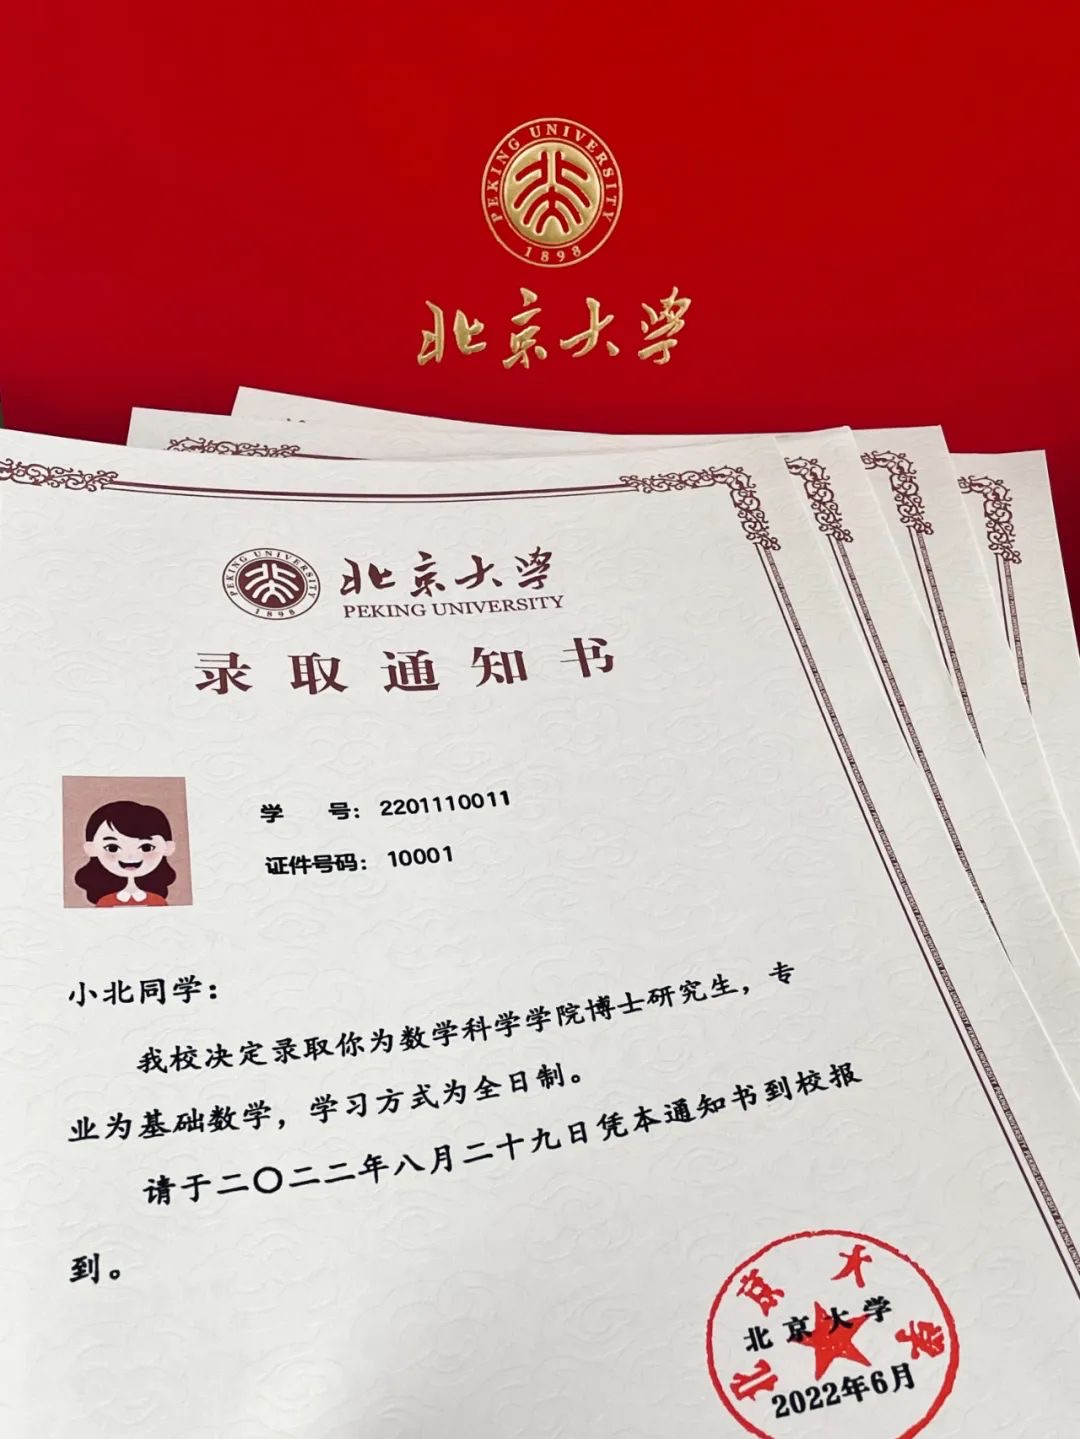 剪纸龙纹，摩斯密码，时间戳……北京高校录取通知书上新